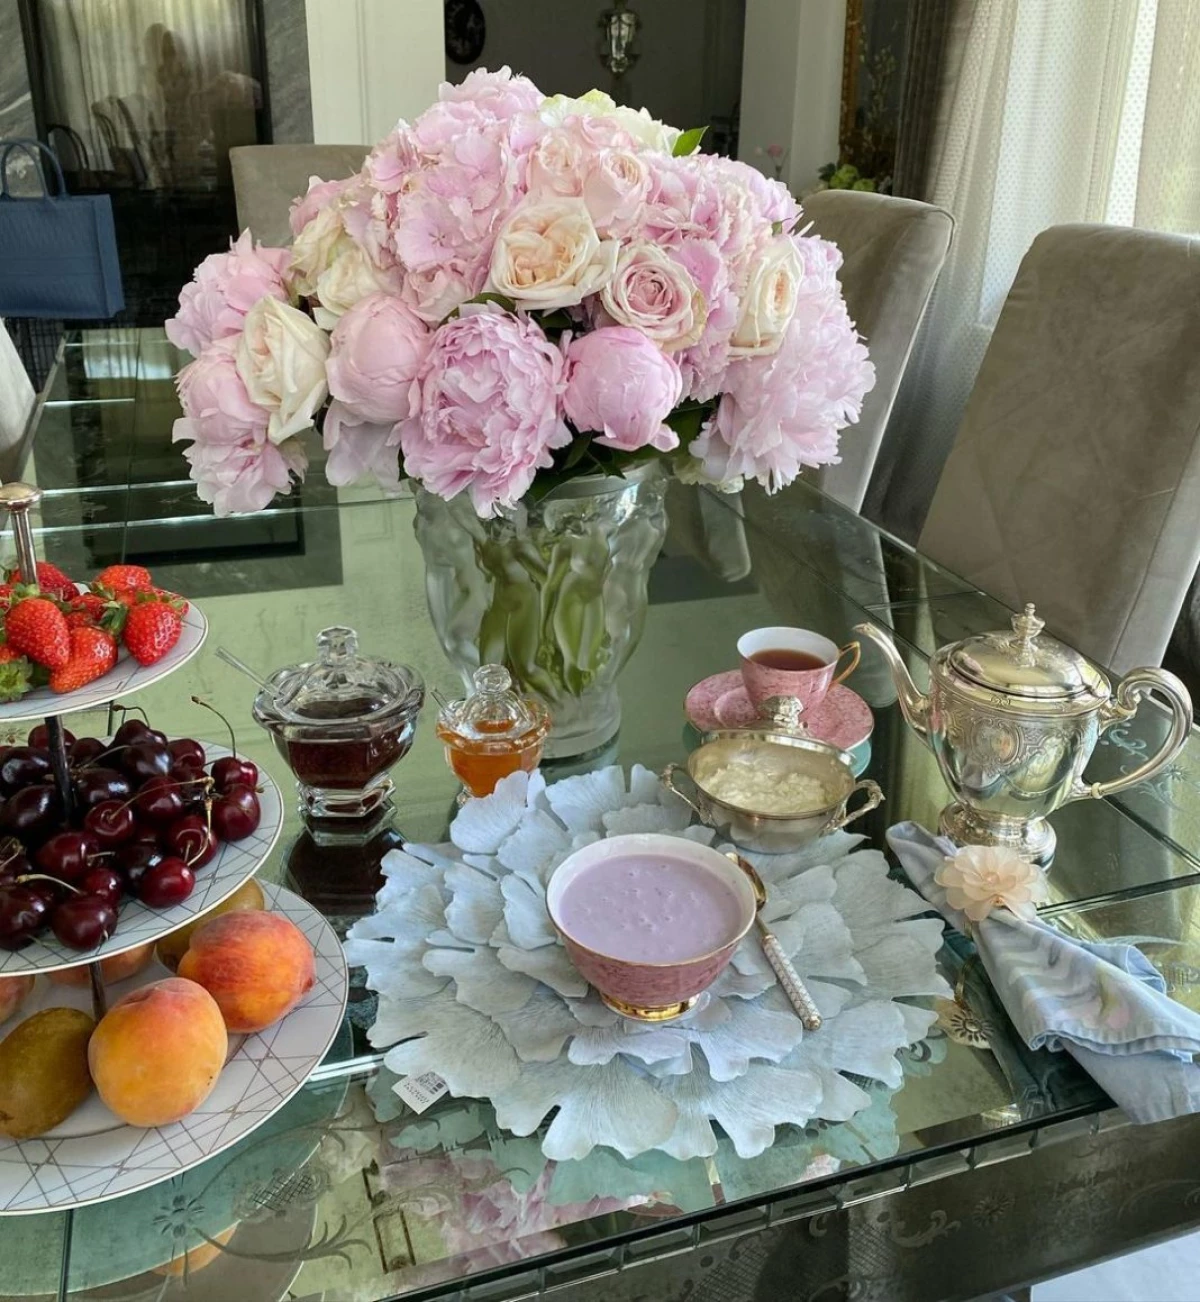 Fenomén ruského Instagramu - Yana Rudkovskaya snídaně na průměrném státním zaměstnanci 5214_17